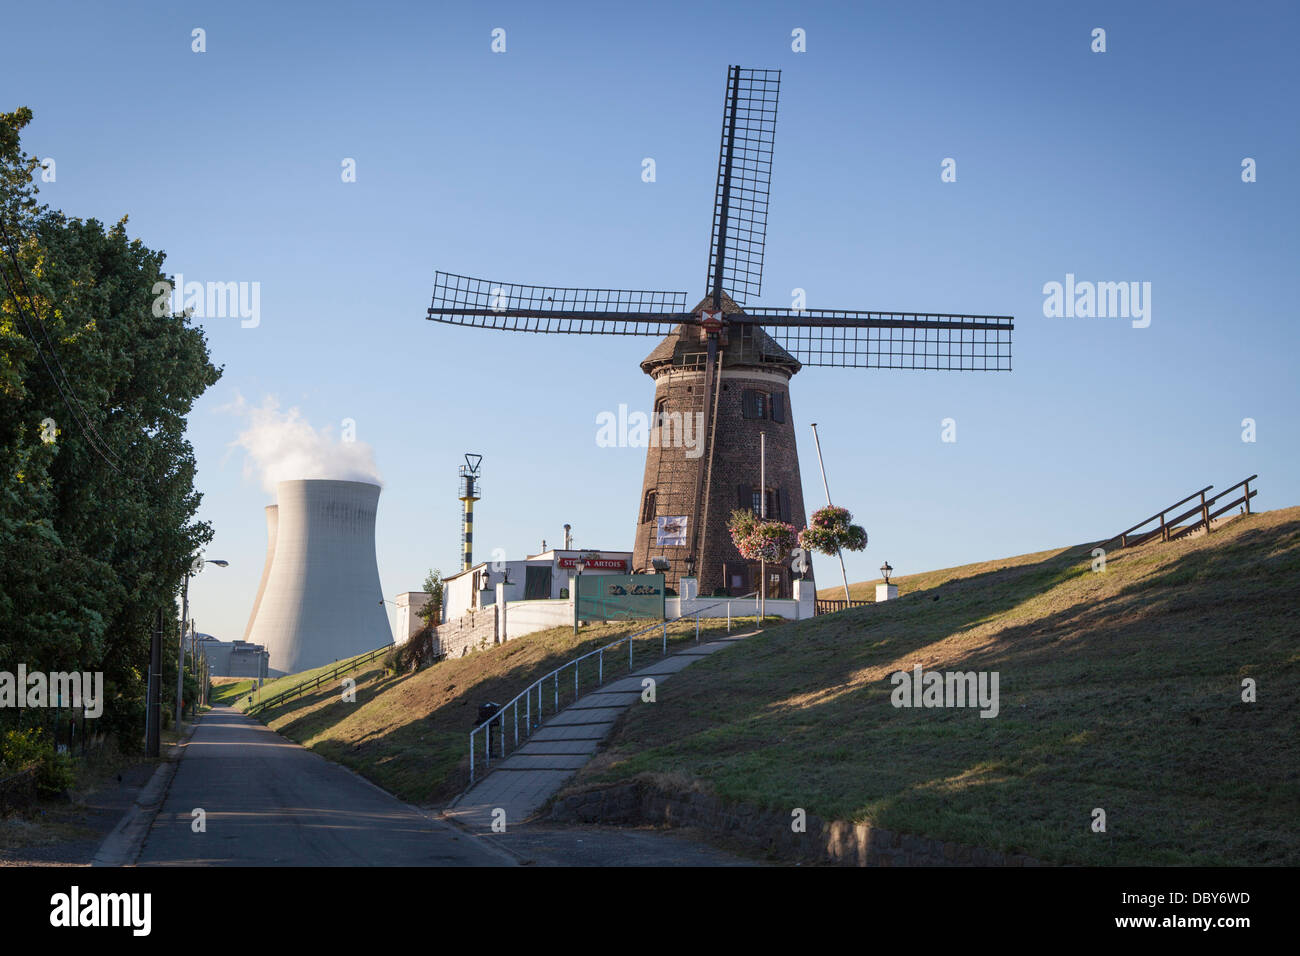 Il mulino a vento di Doel in Belgio con la centrale nucleare, di proprietà di Electrabel, in background Foto Stock